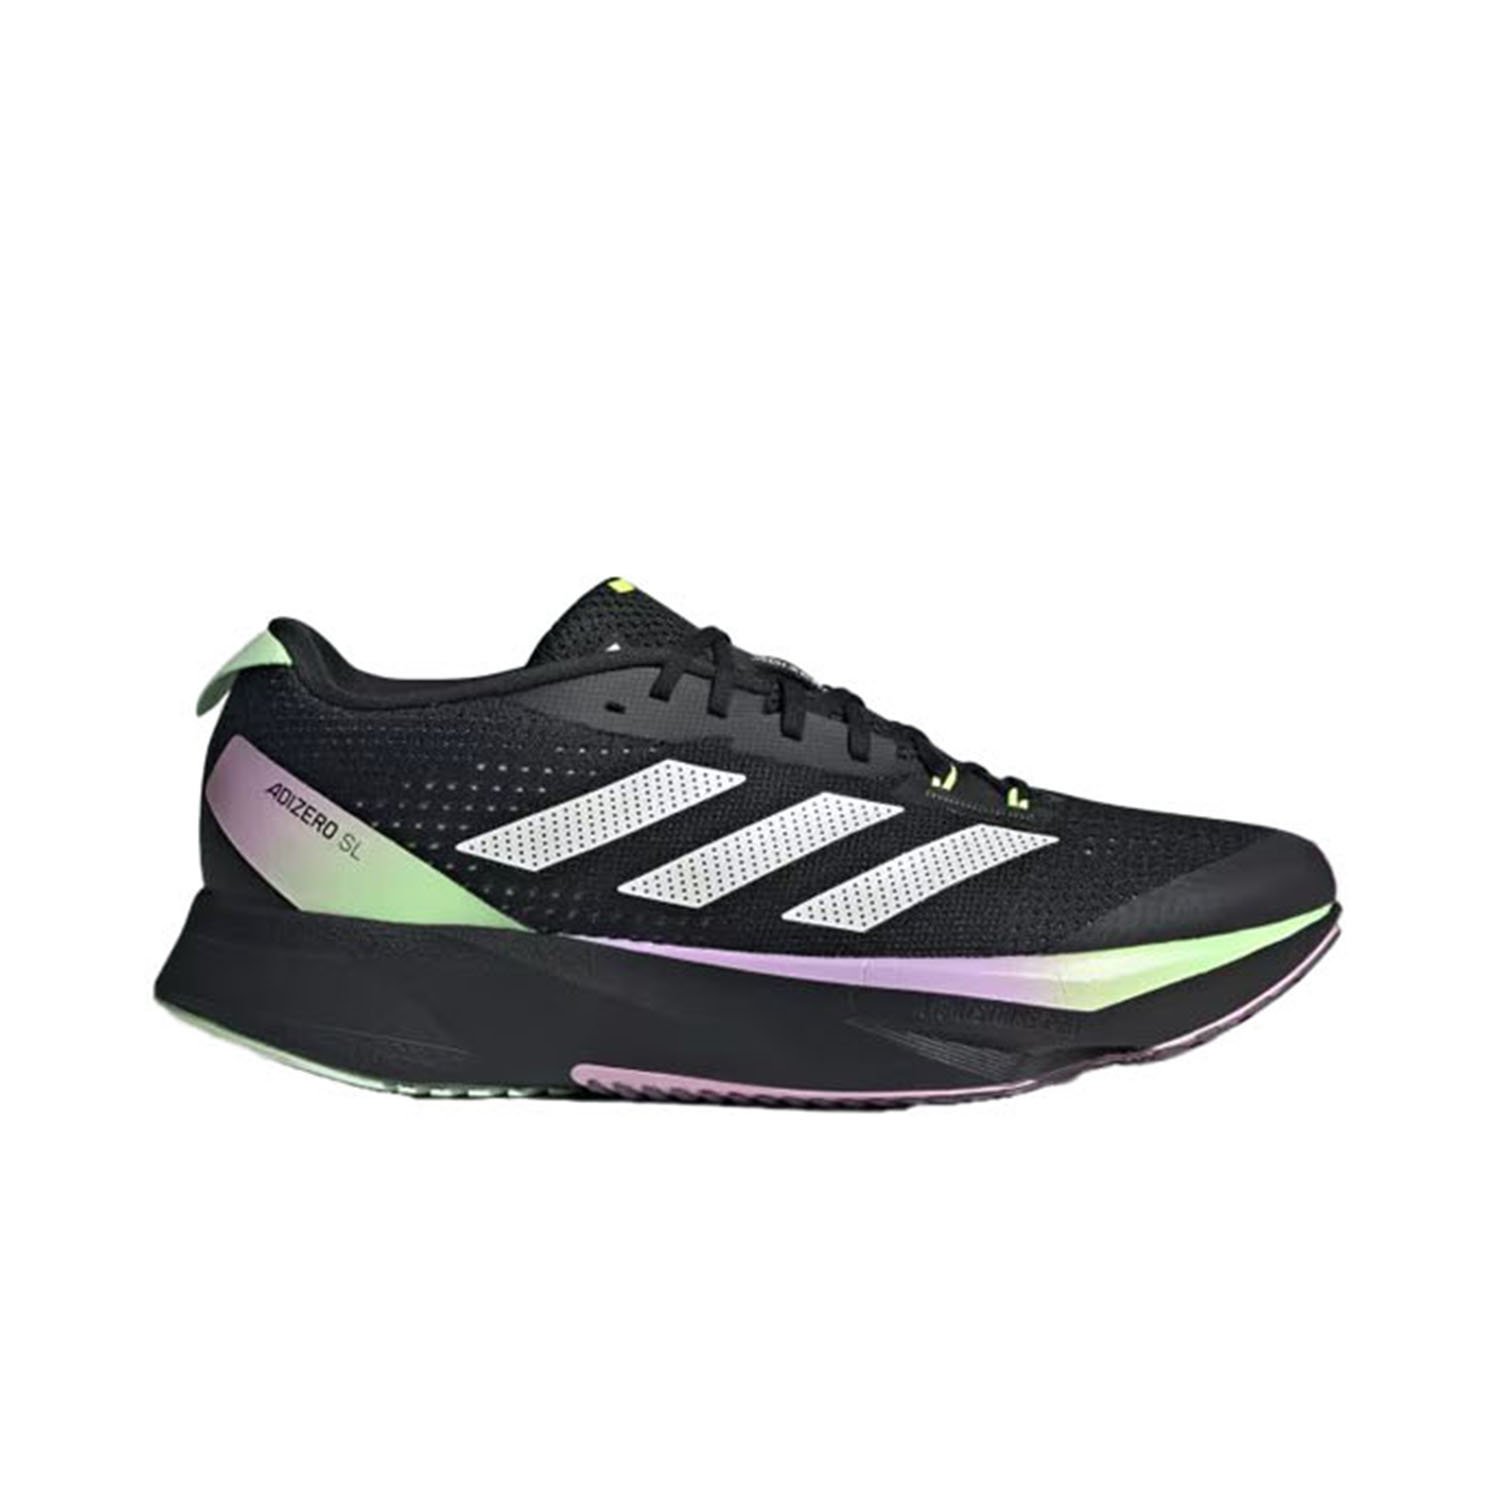 Adidas Adizero SL Erkek Yol Koşu Ayakkabısı - Siyah - 1